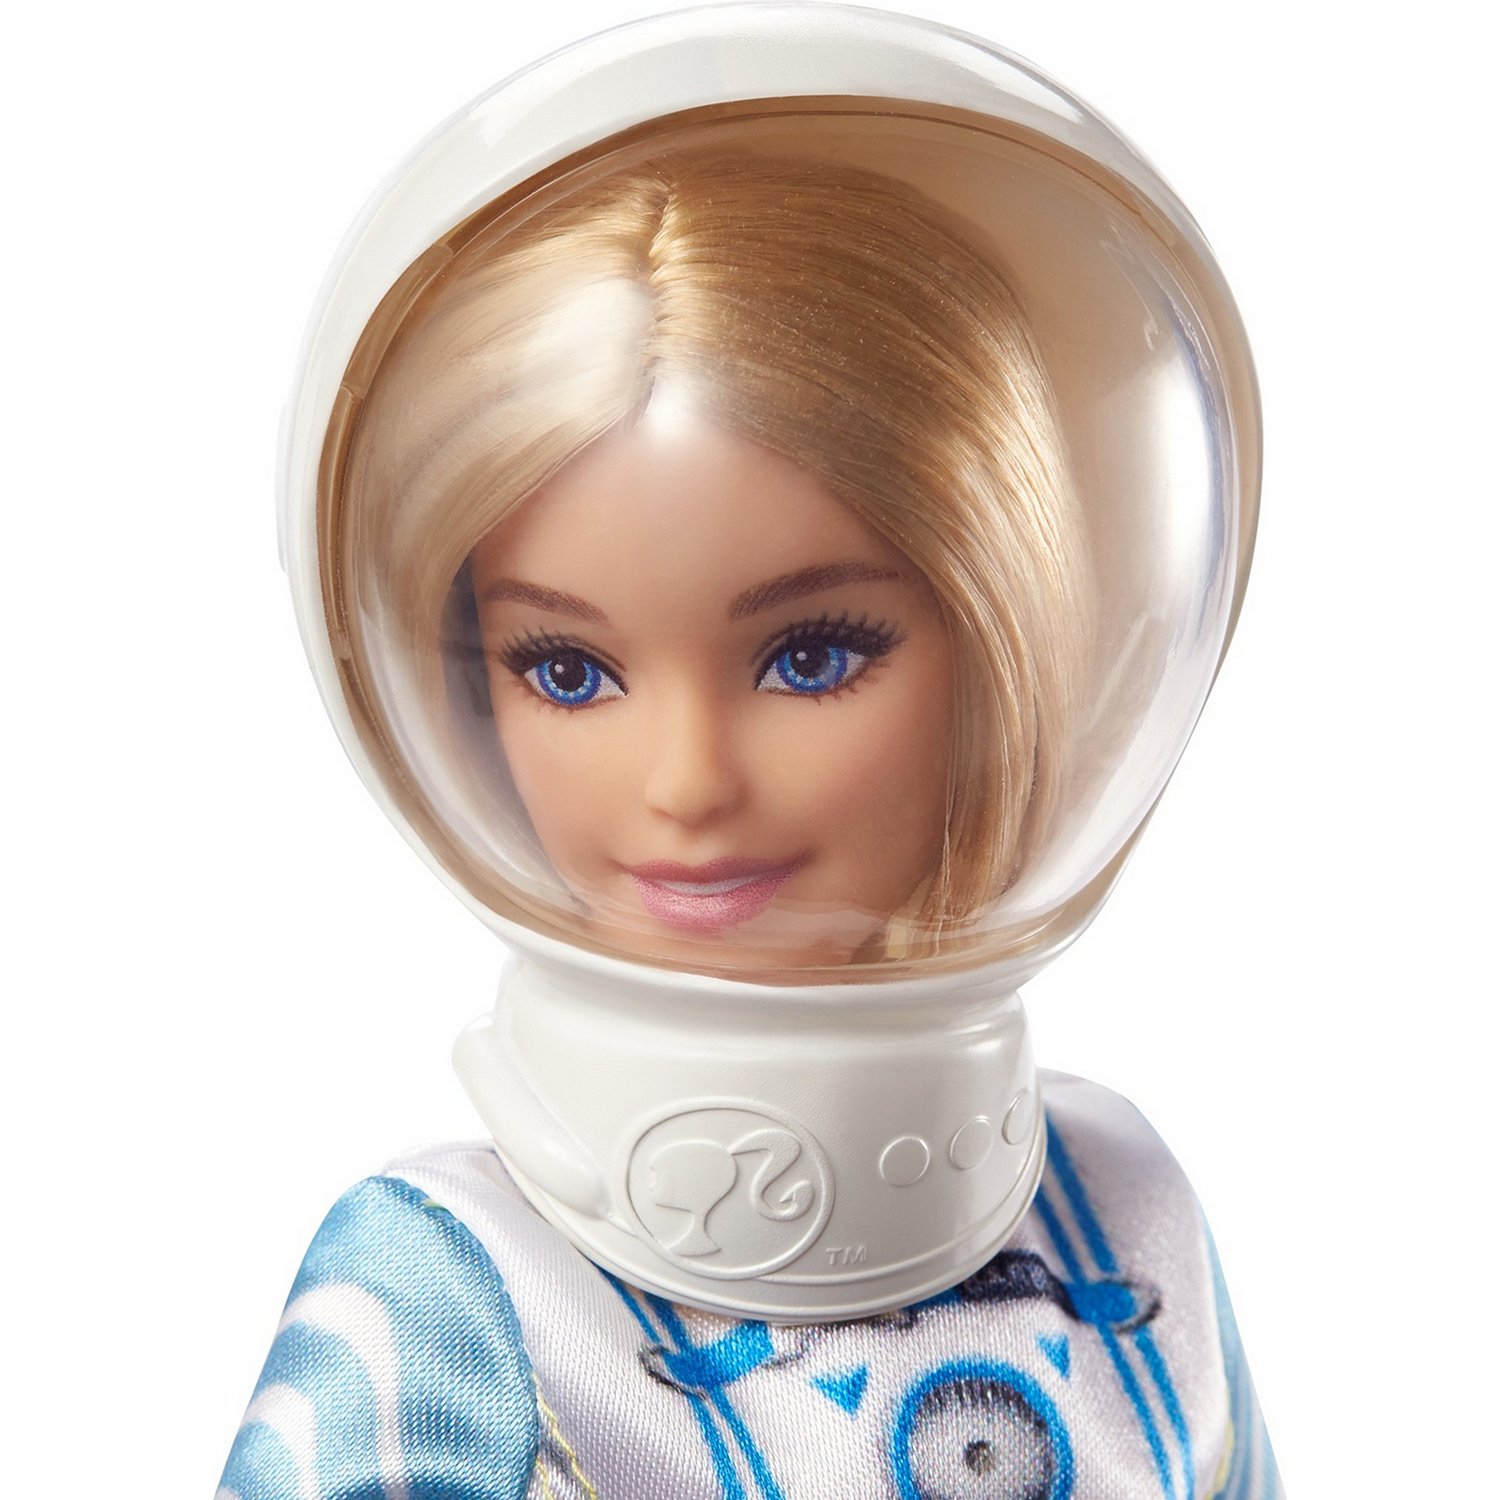 Кукла Barbie Космонавт GTW30